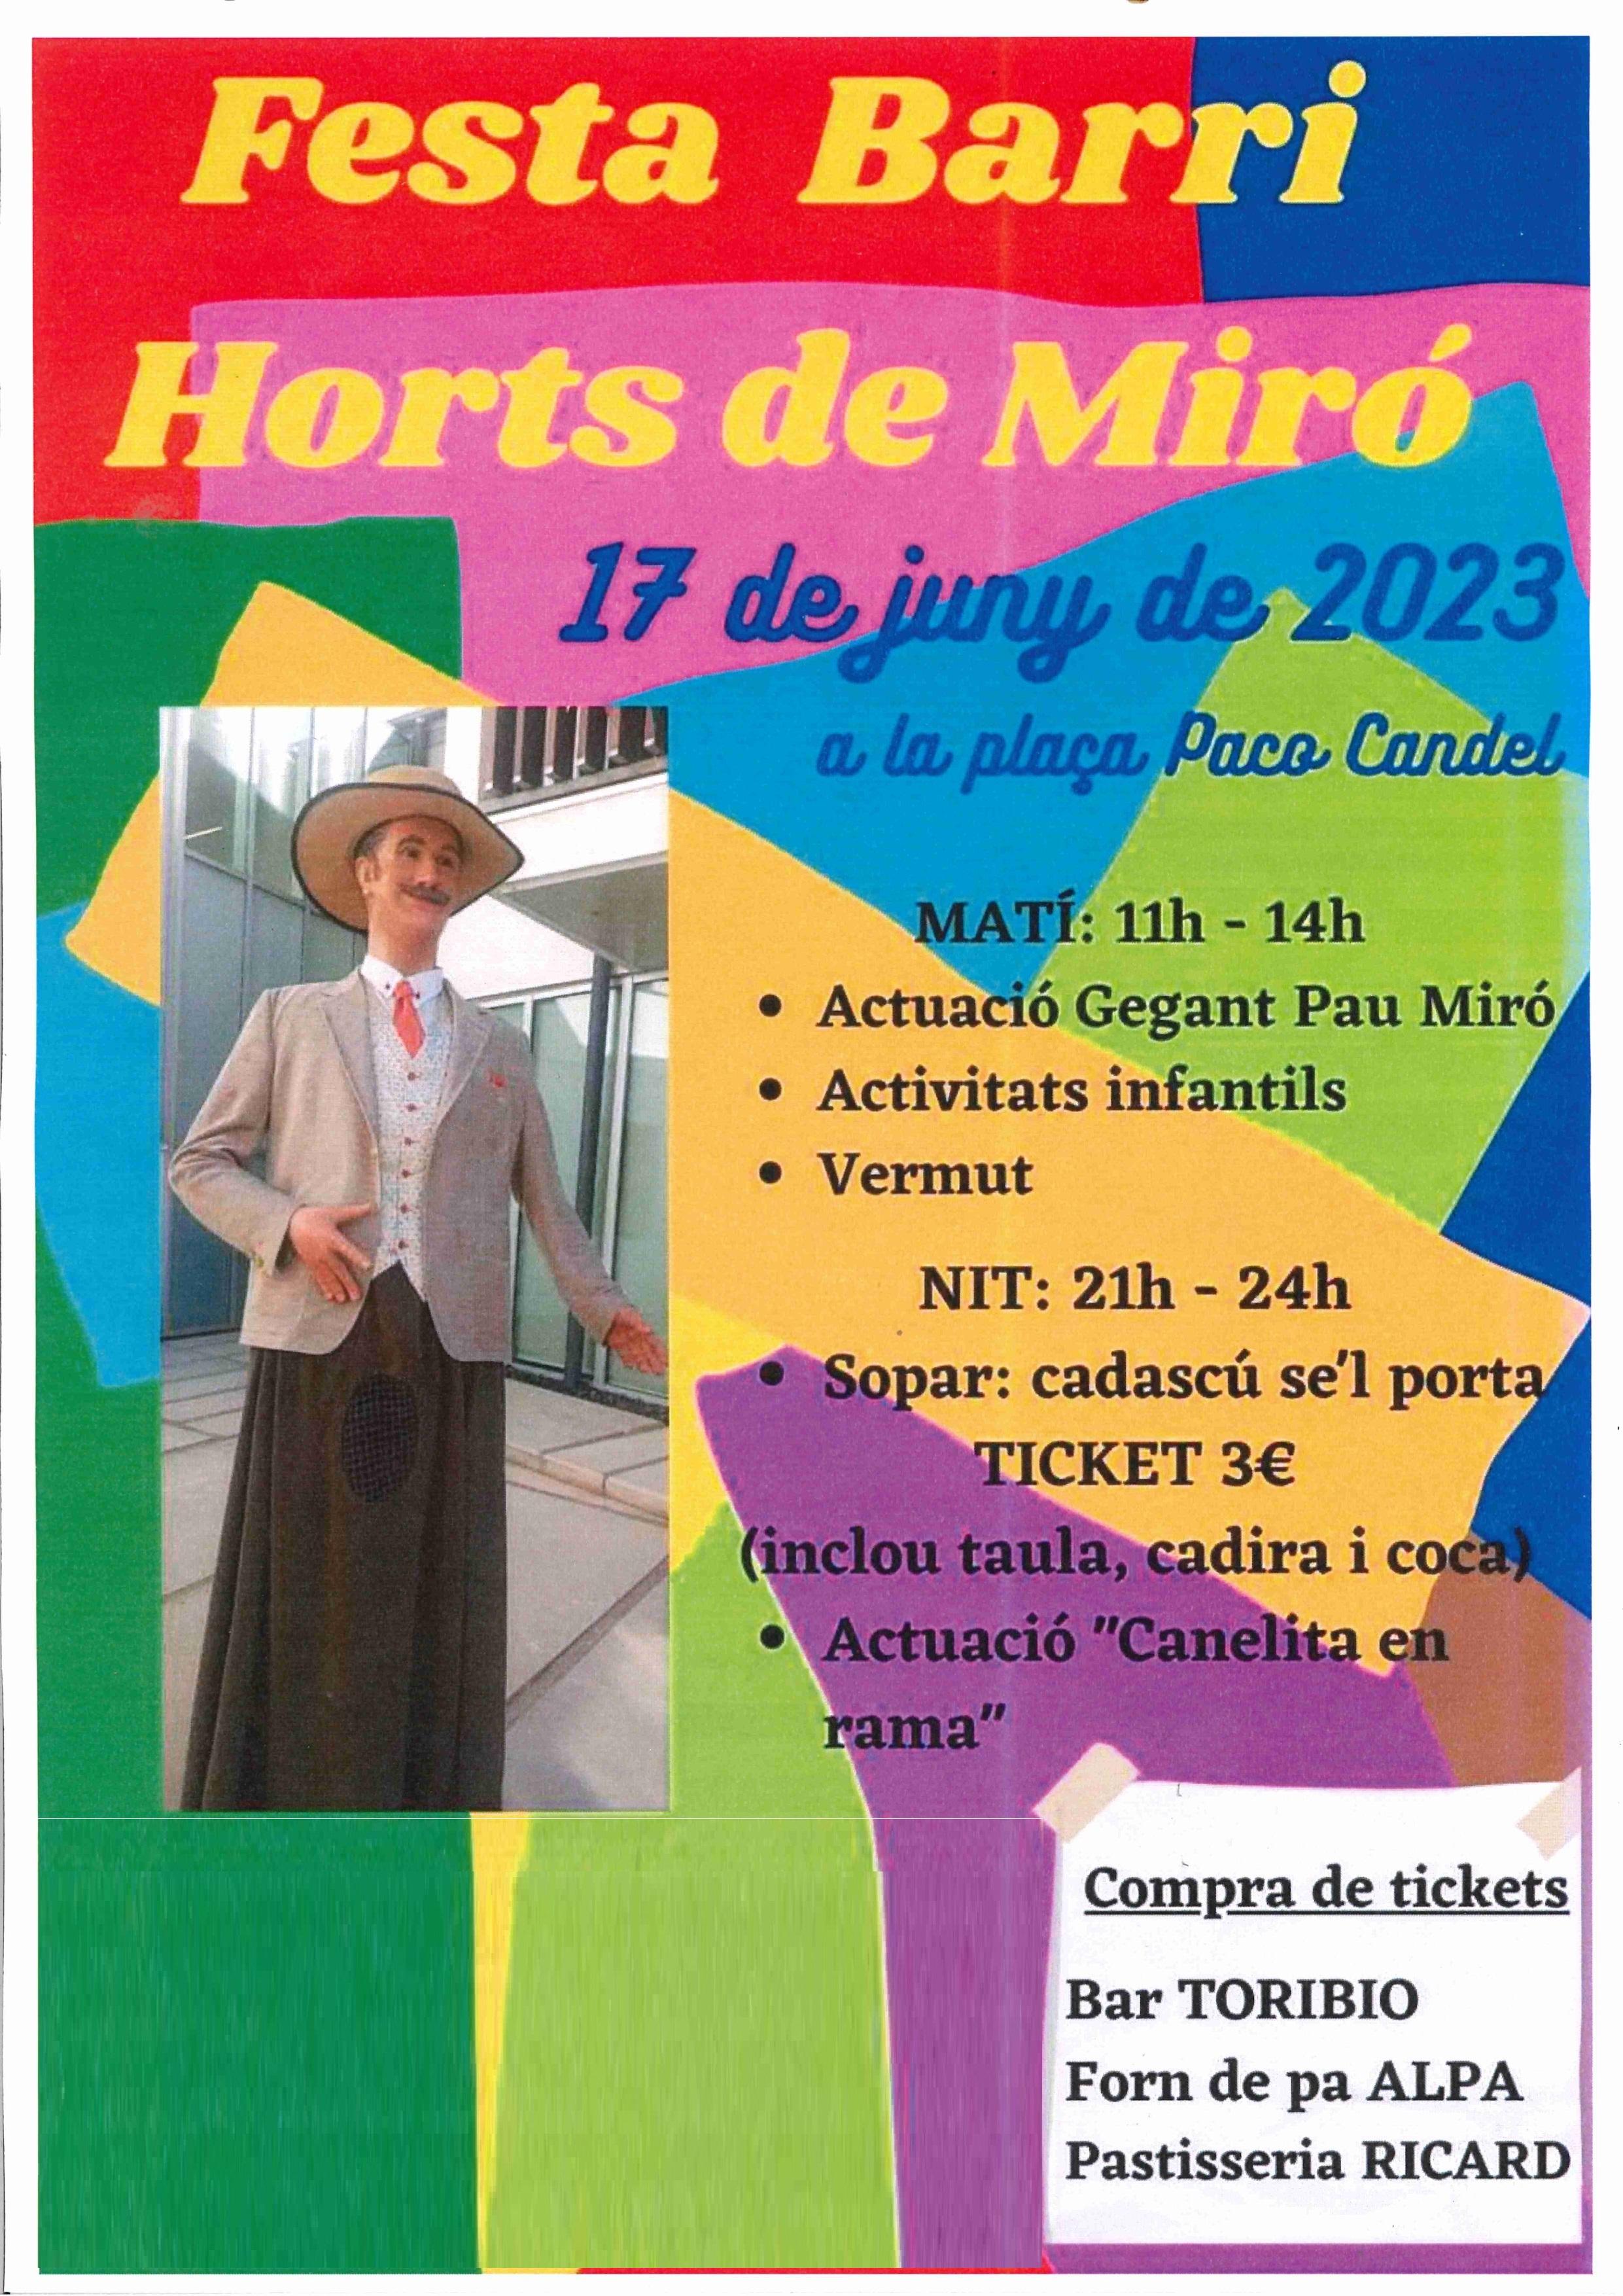 Festes del Barri  Horts de Miró